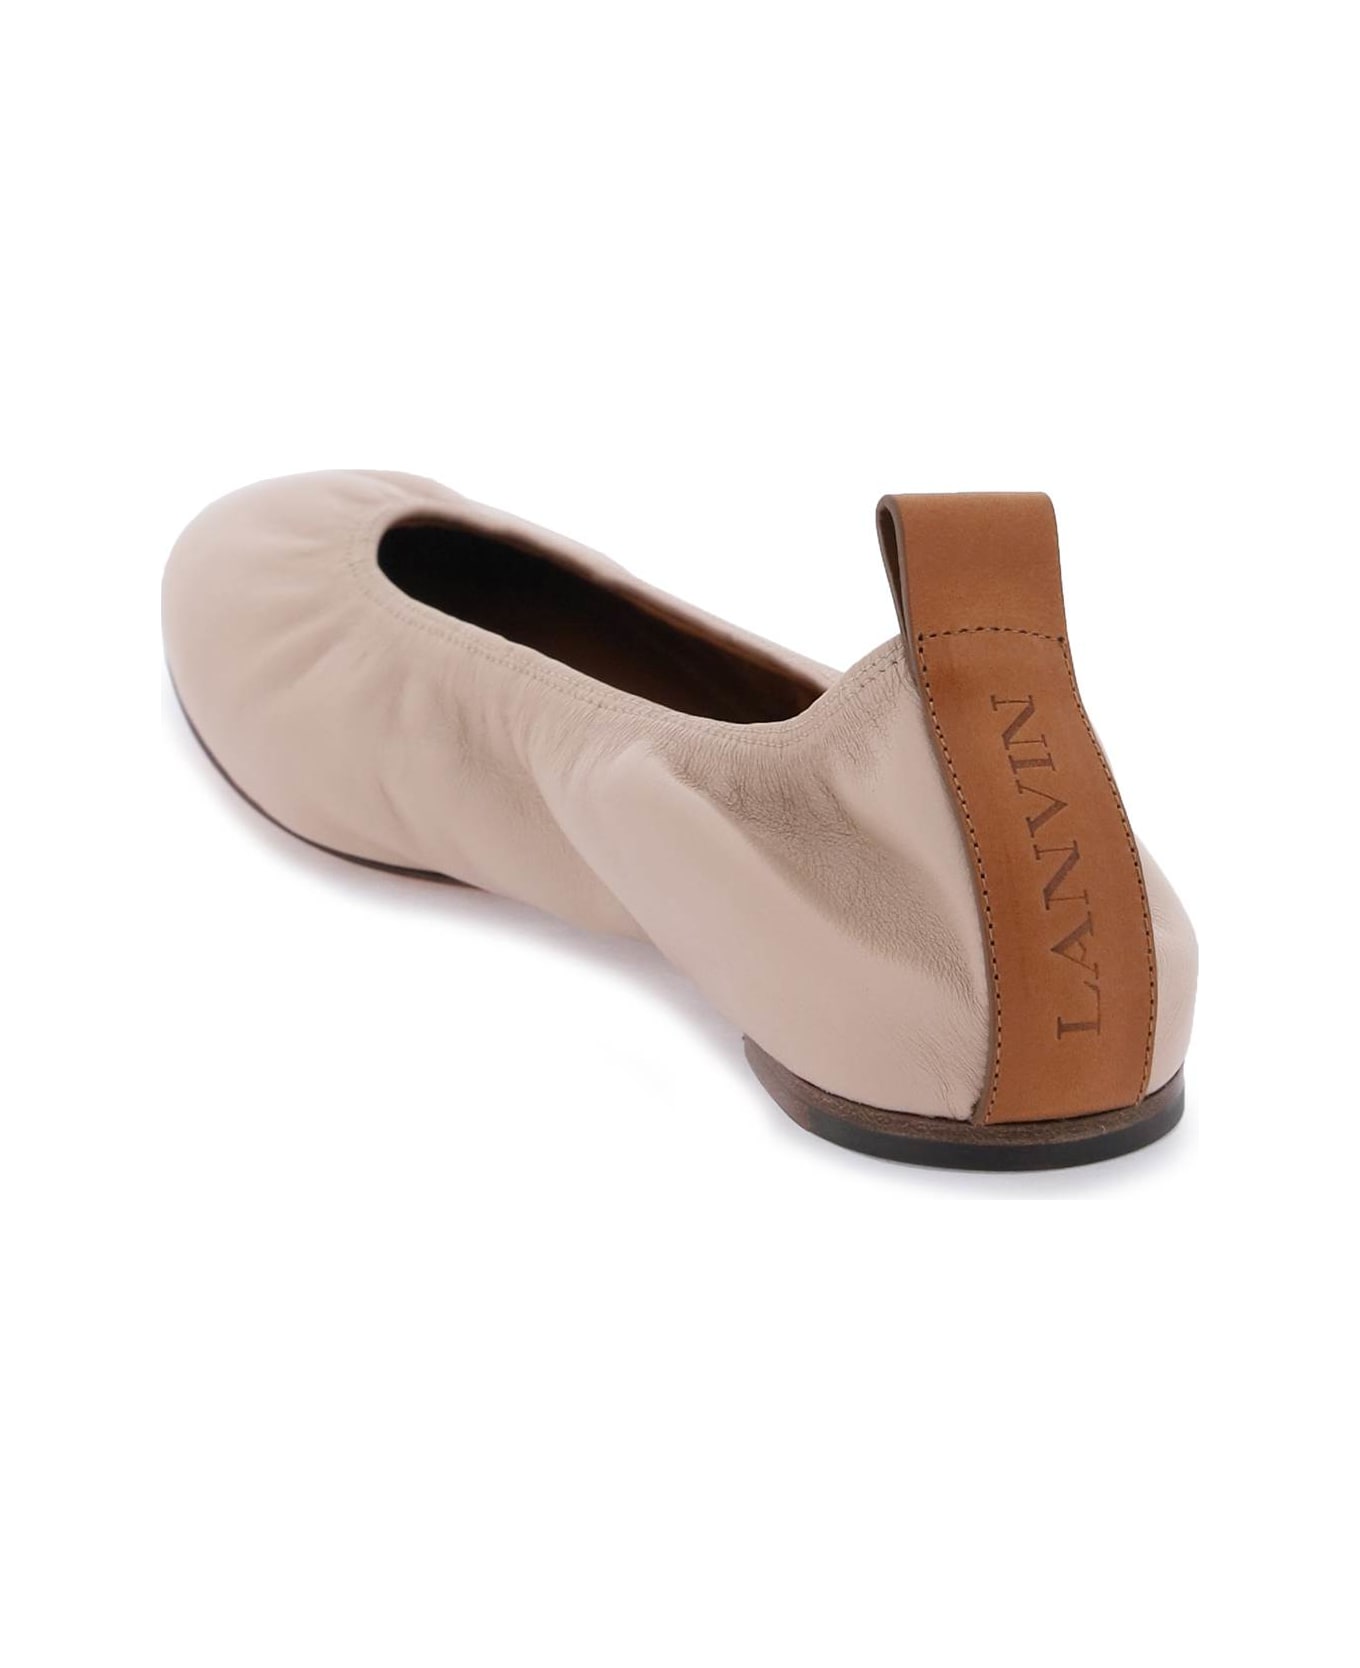 Lanvin Ruch Detailed Slip-on Ballerina Shoes - DARK BEIGE フラットシューズ